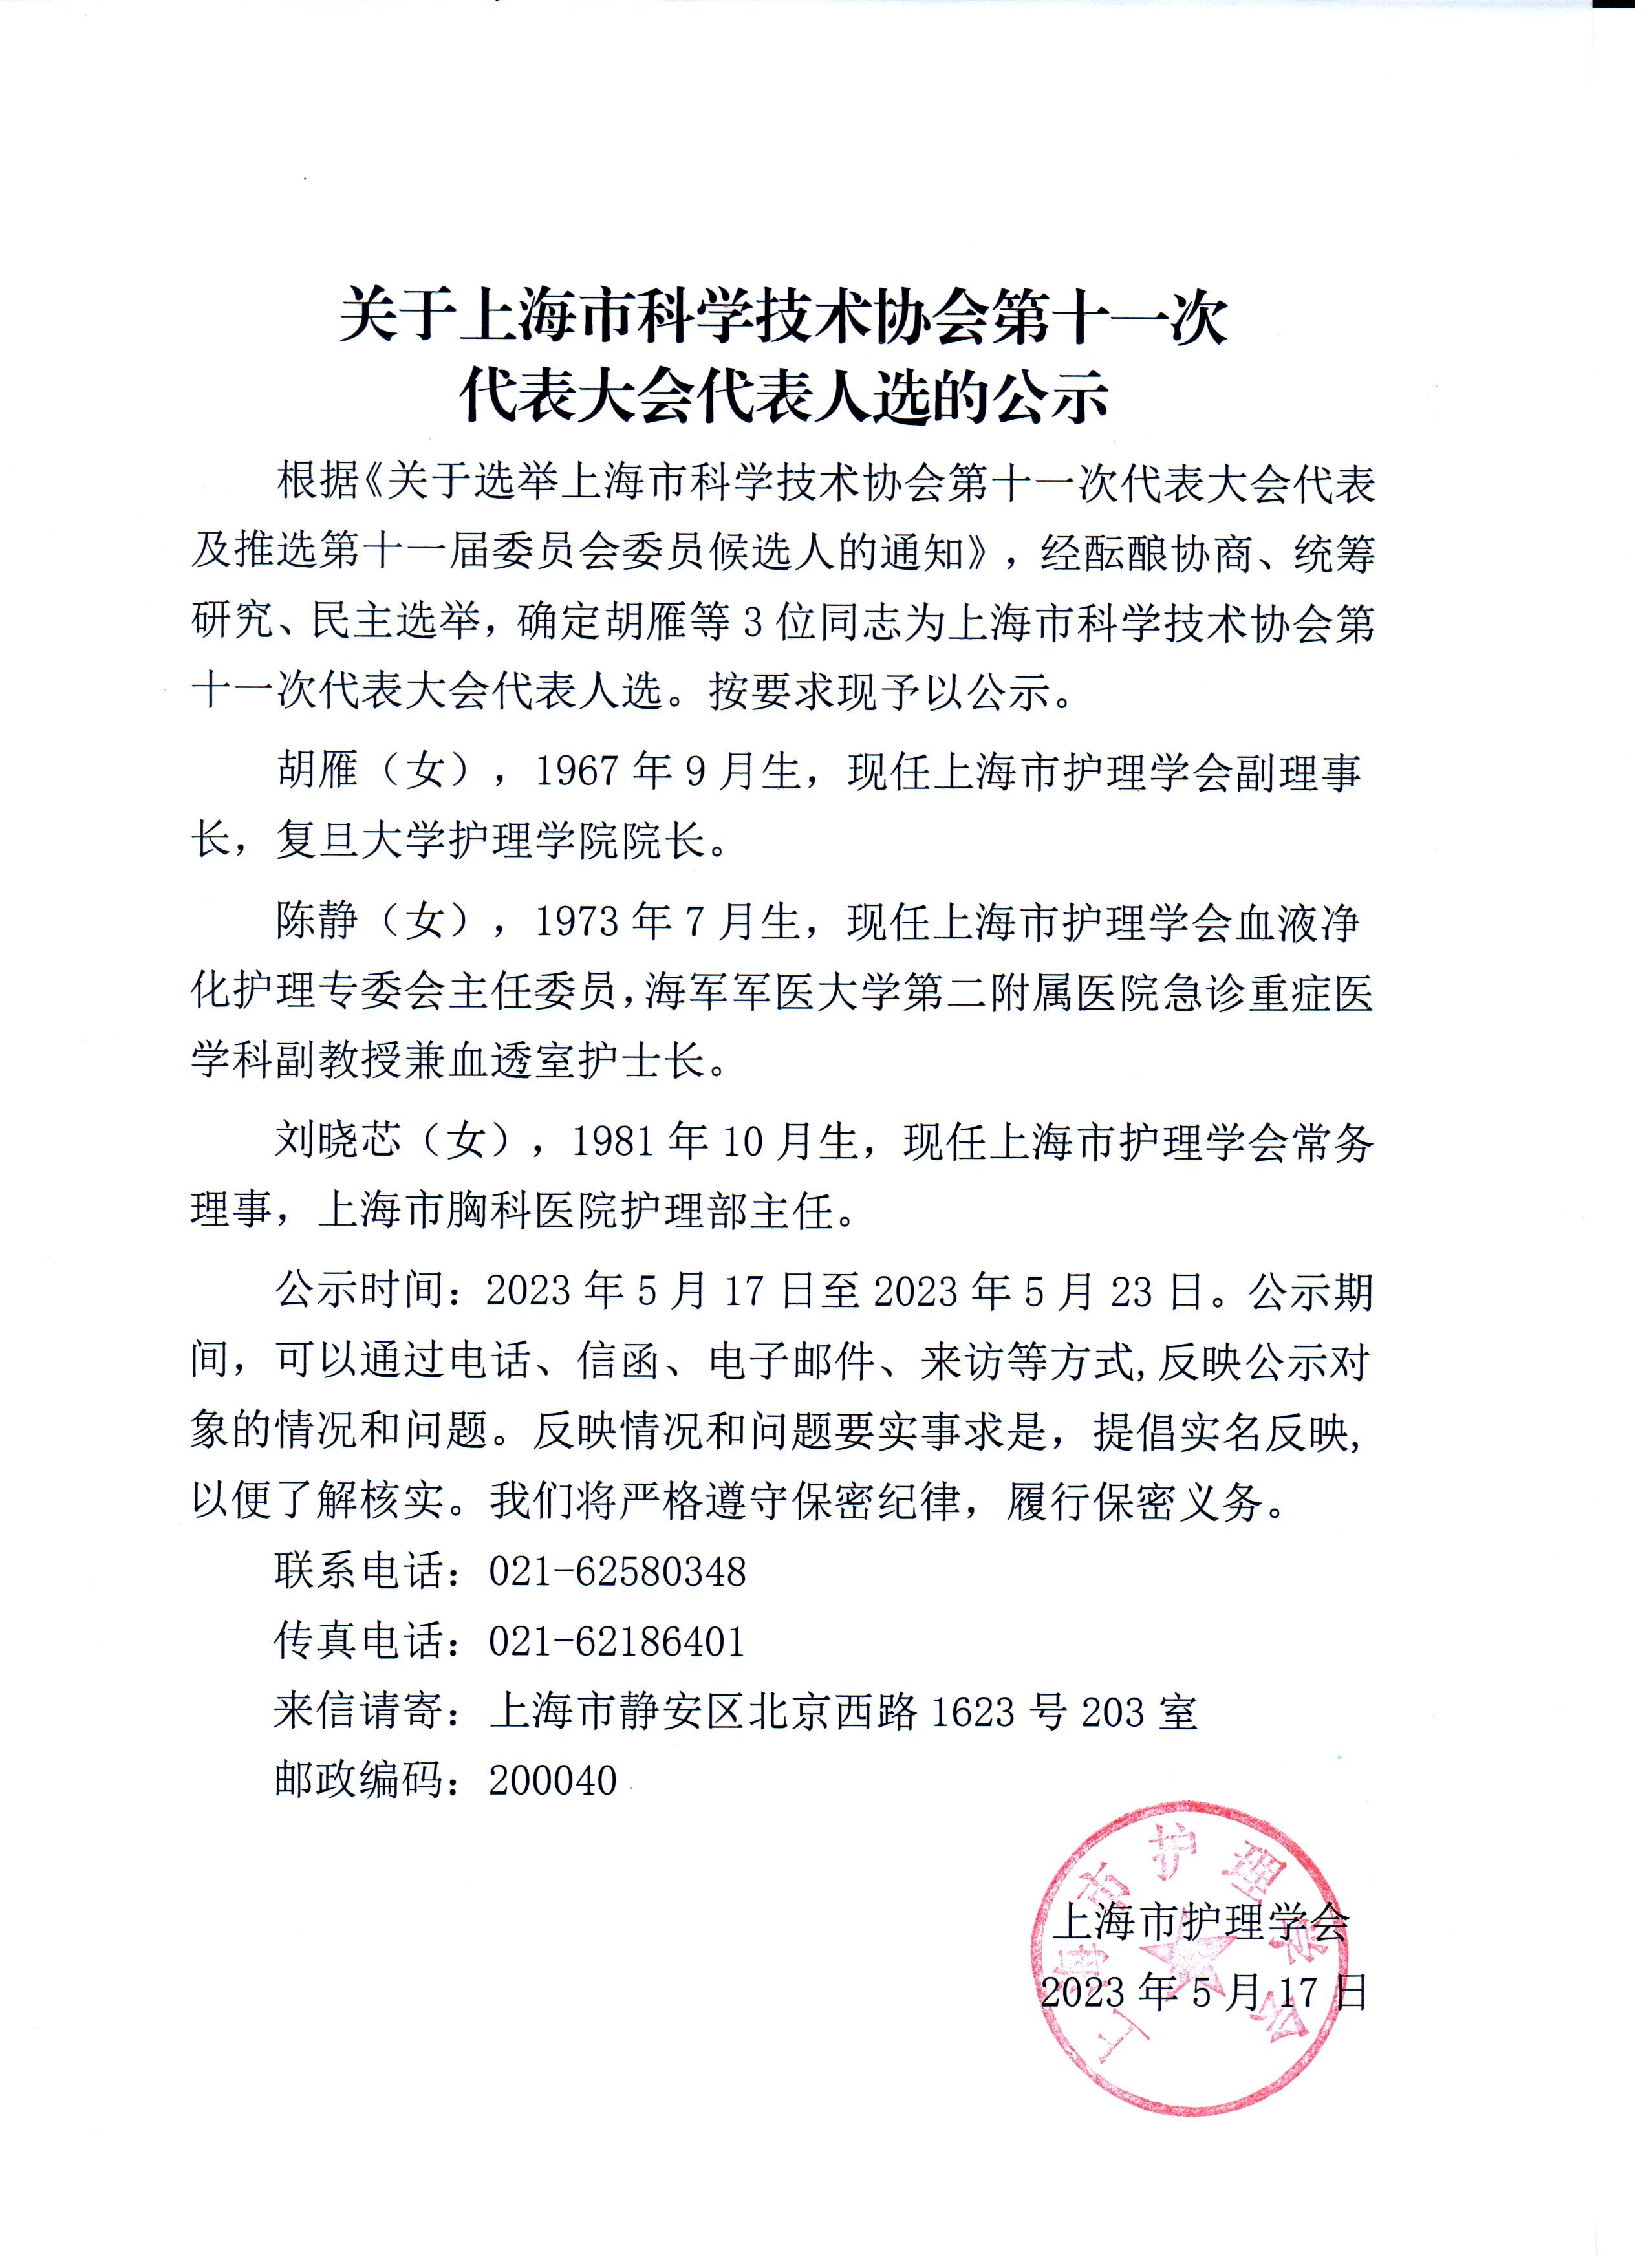 关于上海市科学技术协会第十一次代表大会代表人选的公示.jpg